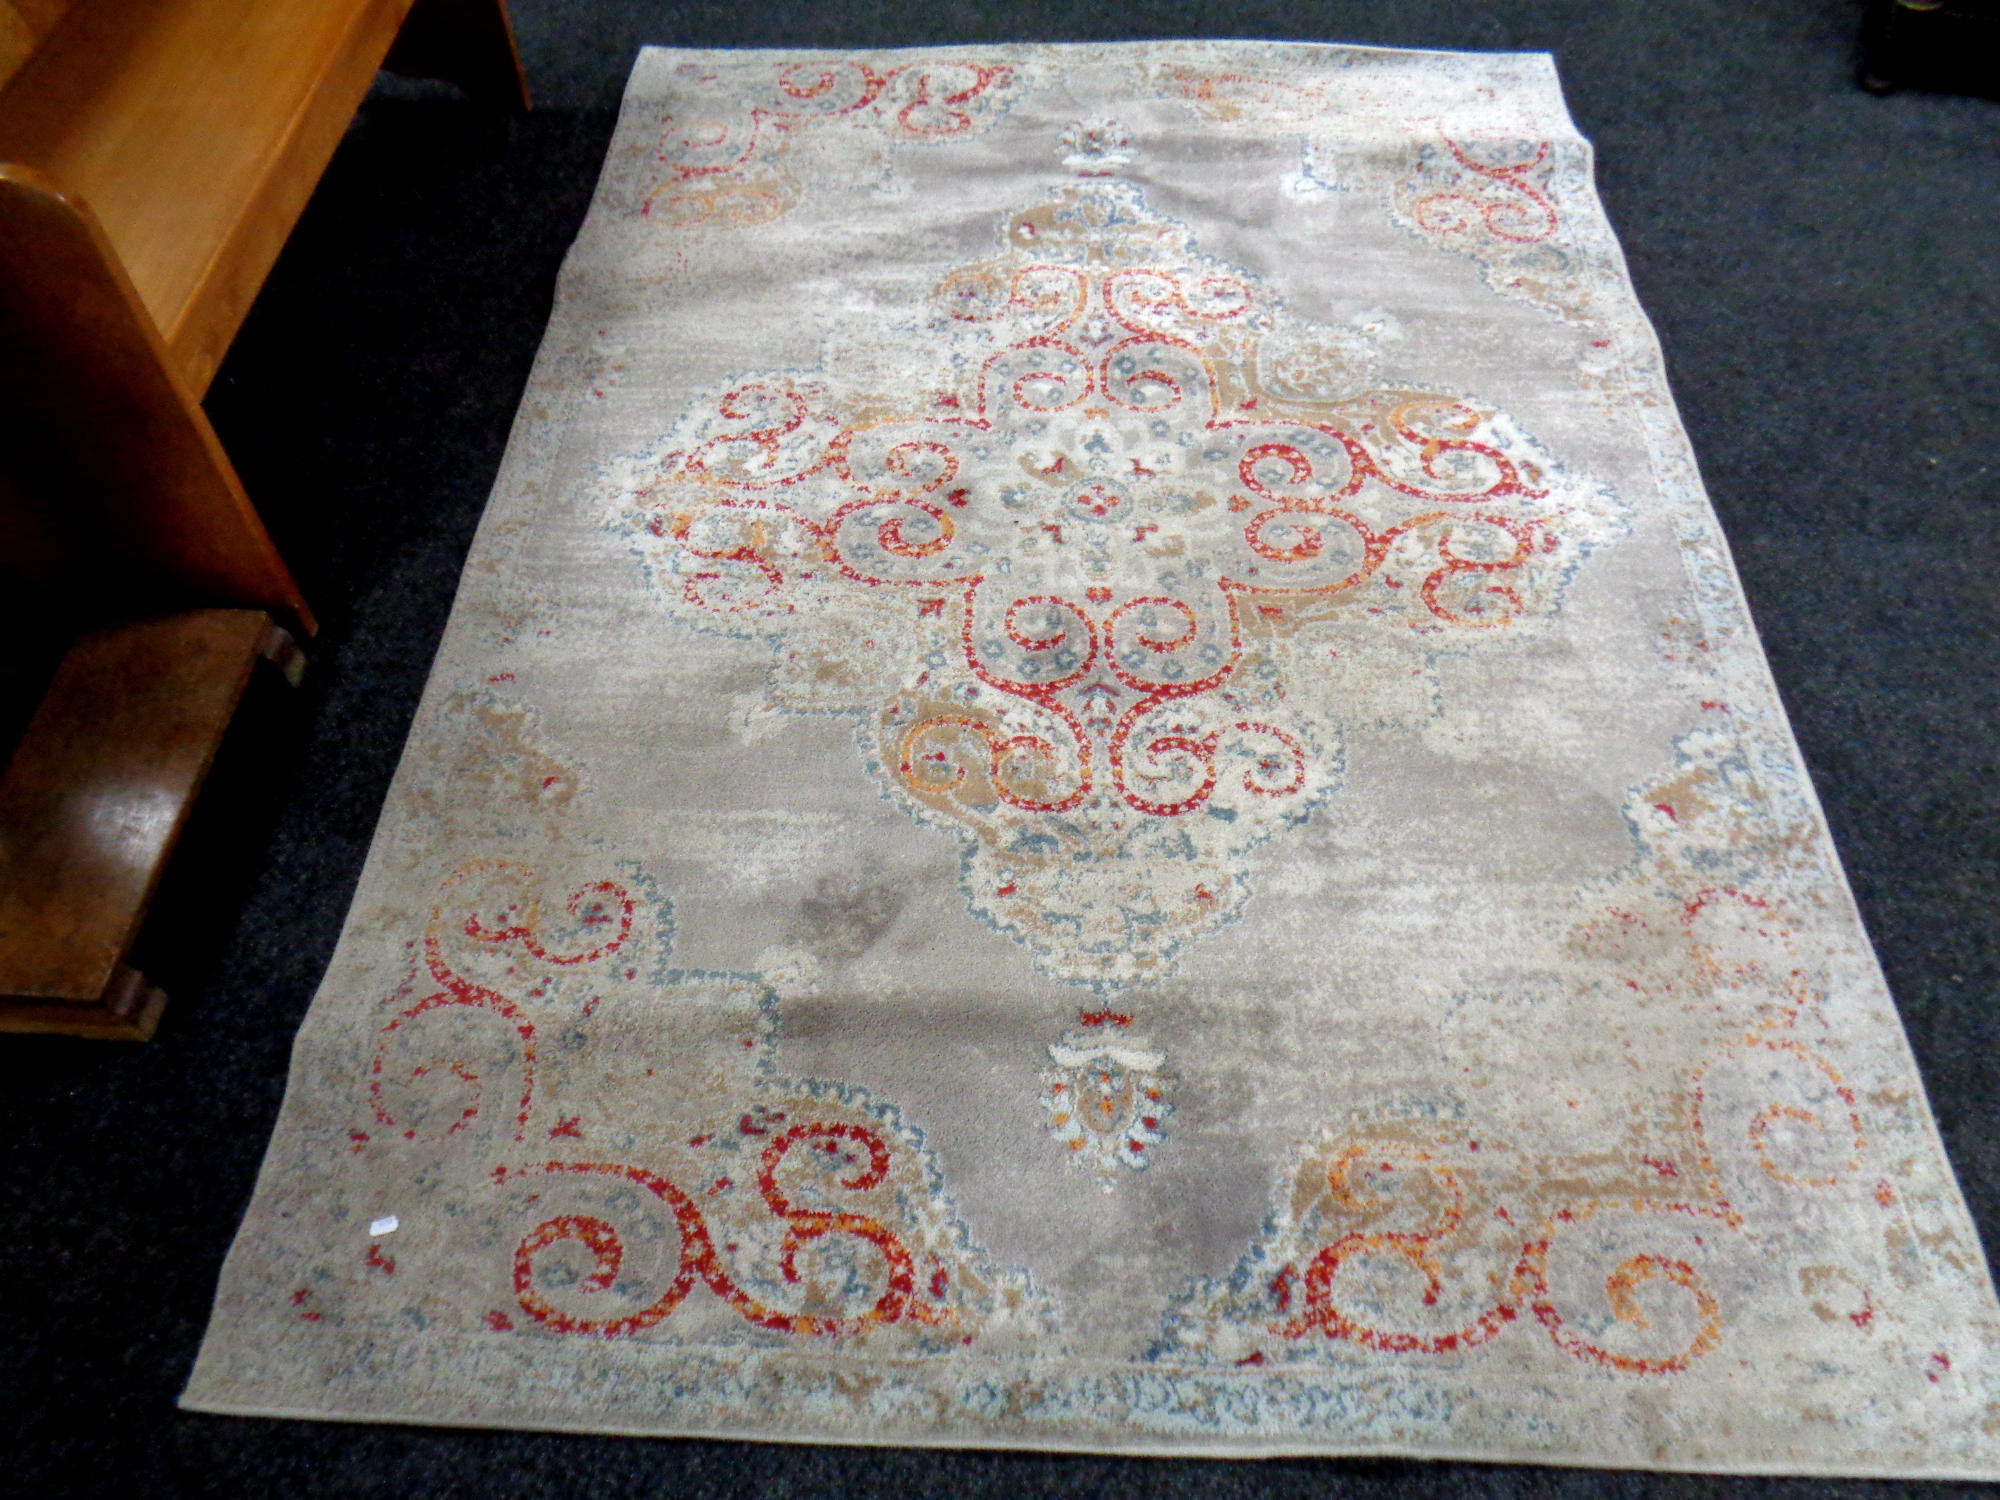 An Ikea Godvad woolen rug,